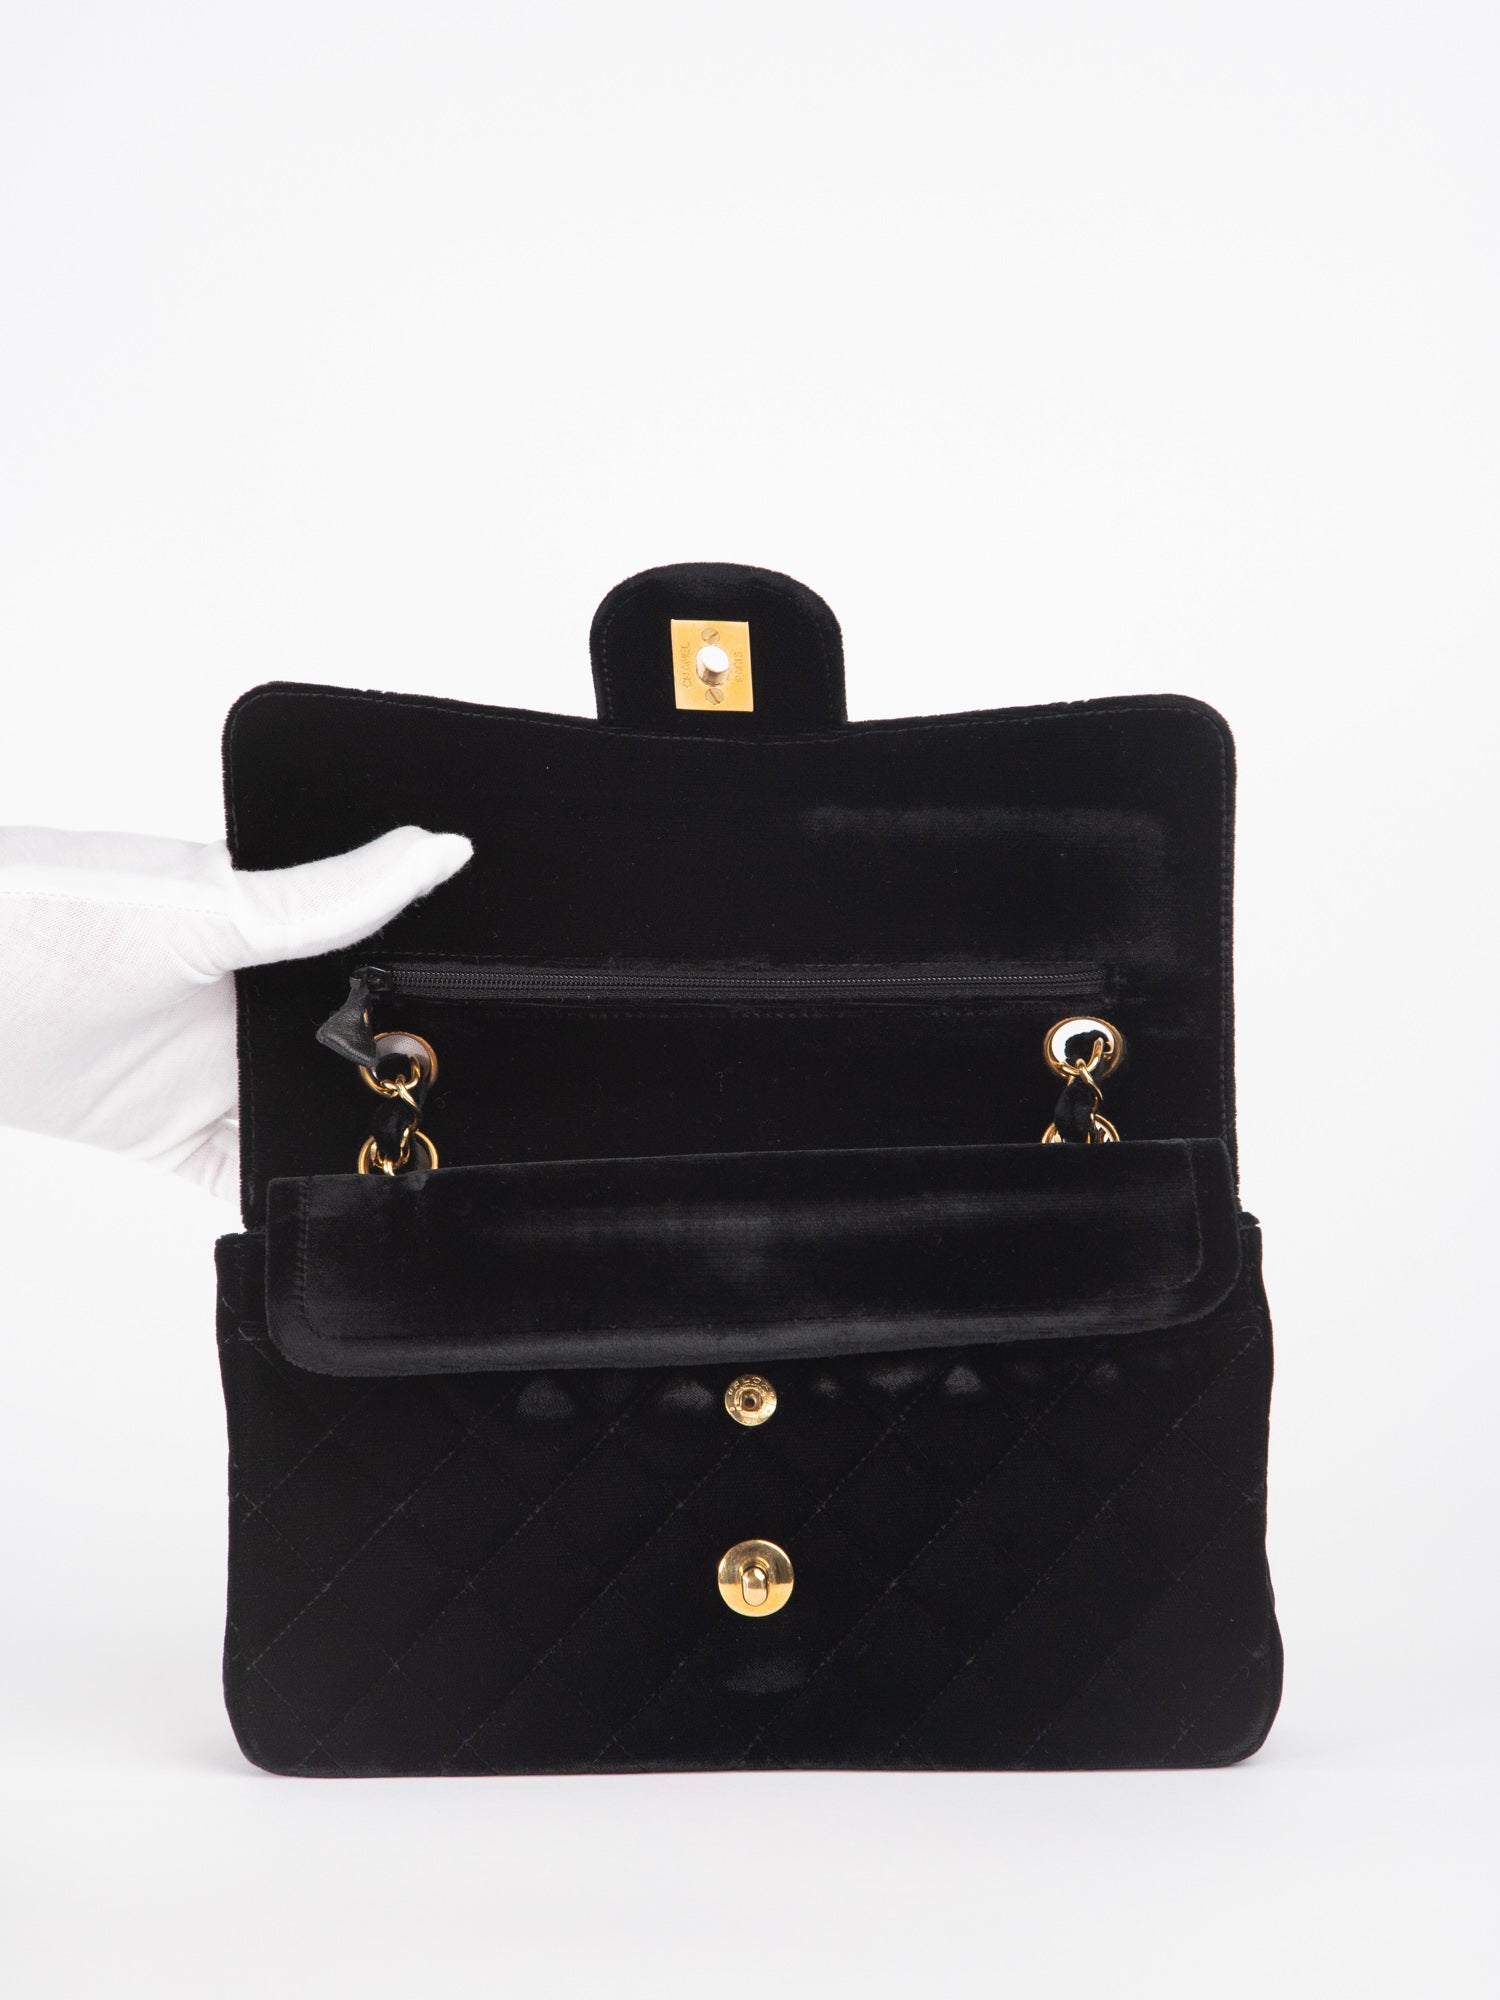 chanel bag and wallet vintage black